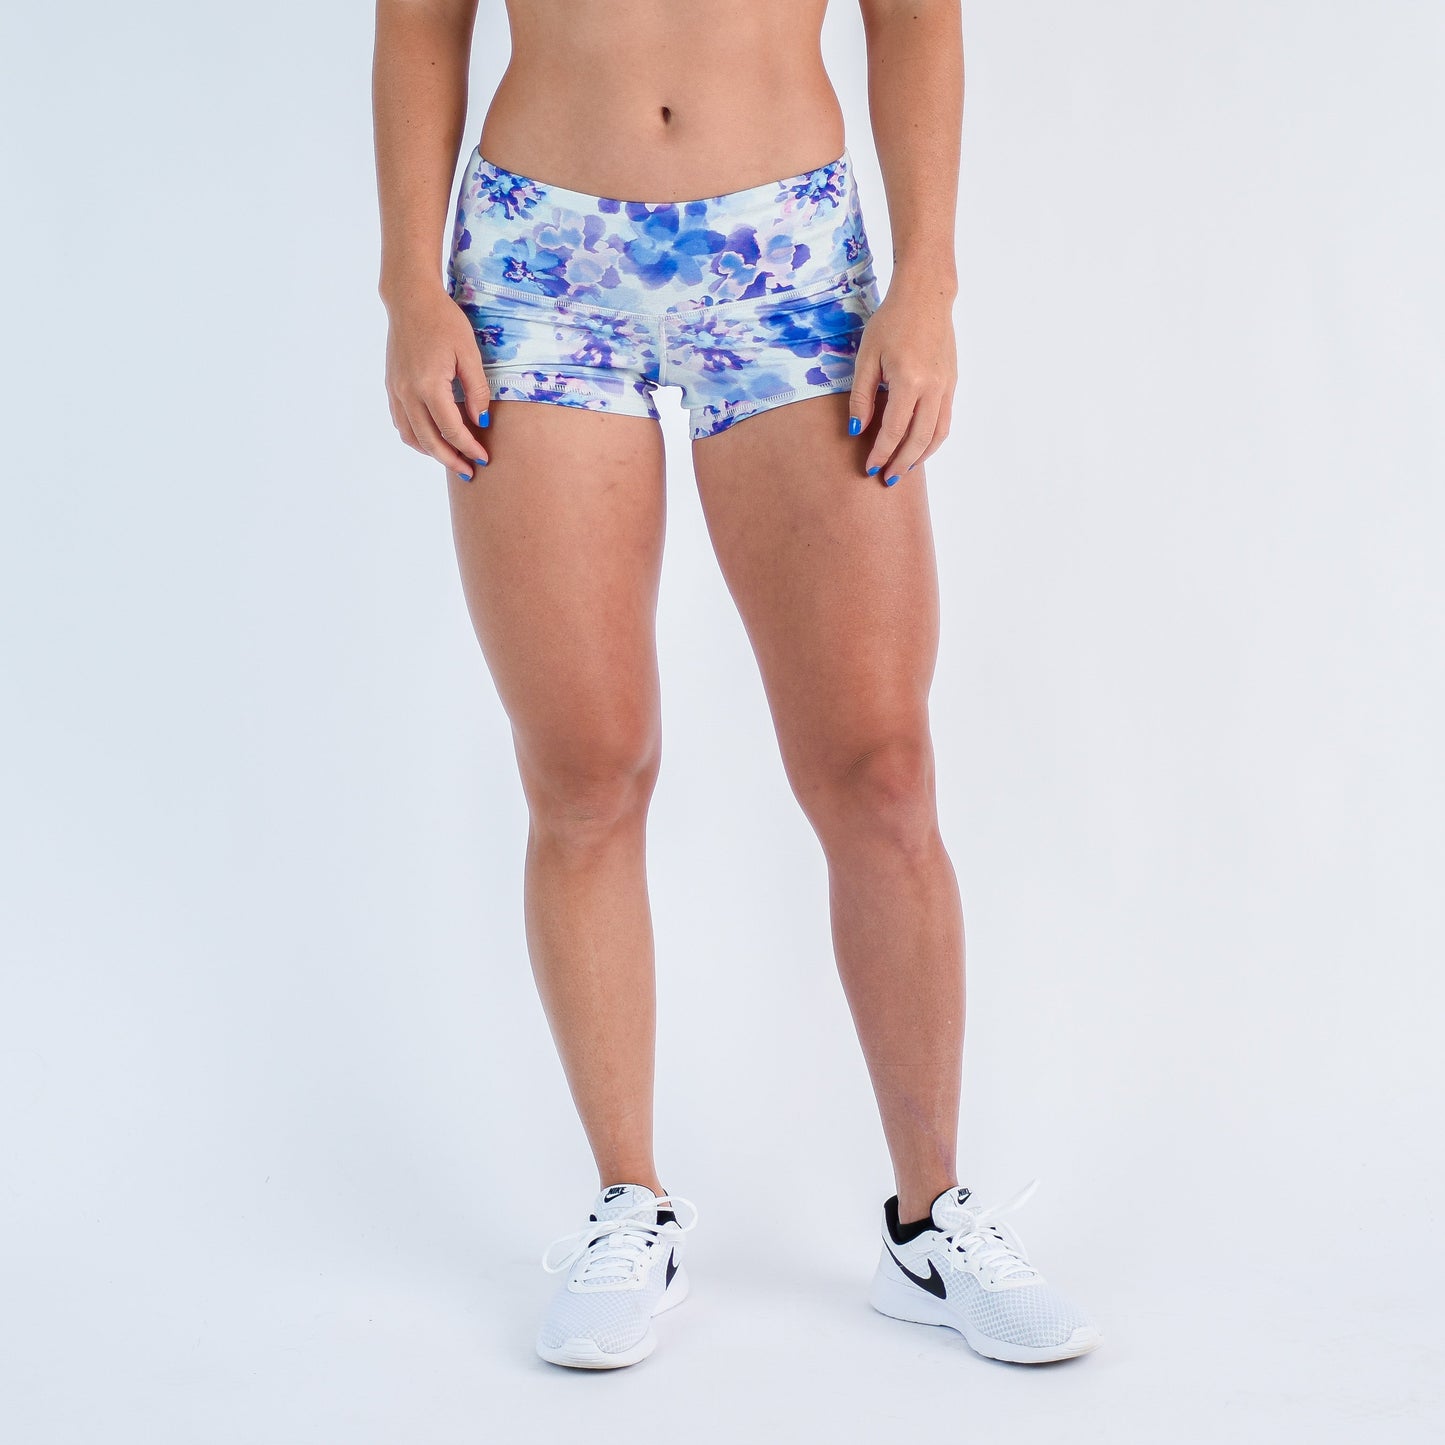 FLEO Heather Vapour Shorts (Low-rise Contour)